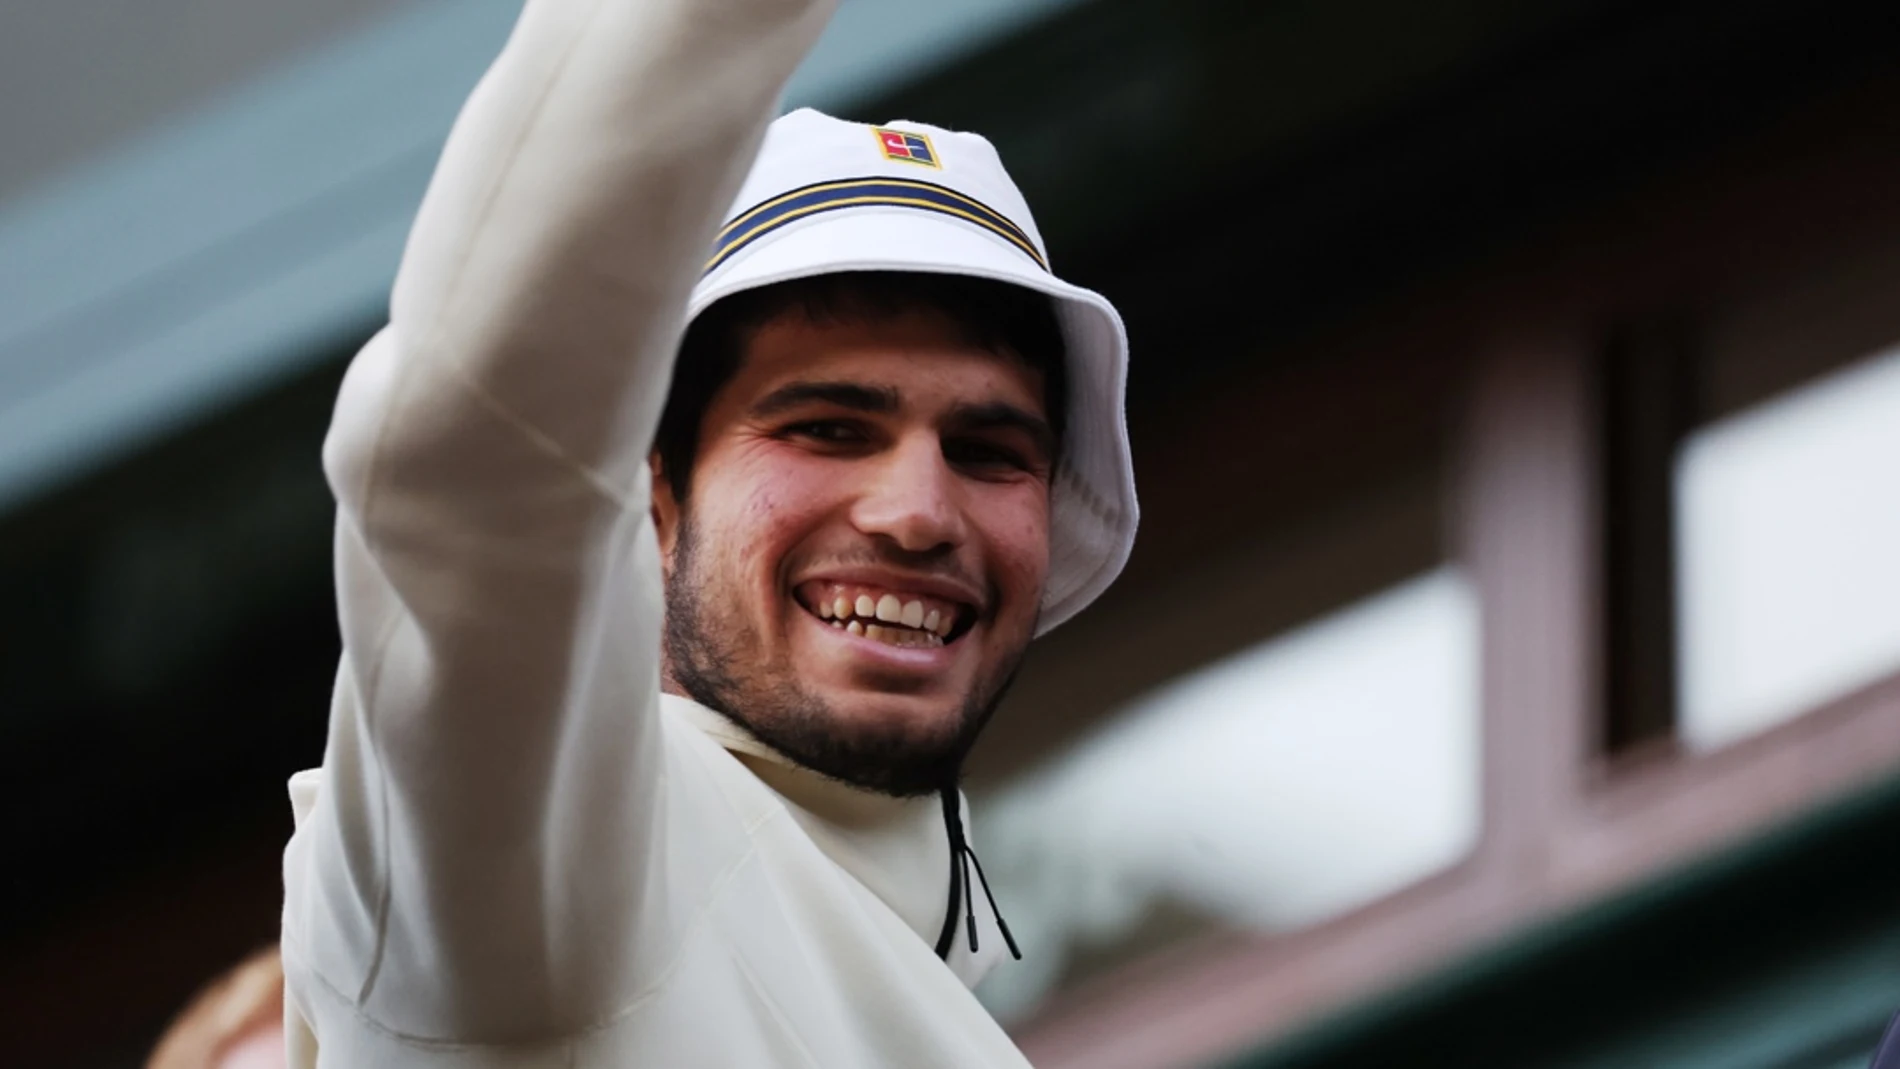 Carlos Alcaraz, tras ganar Wimbledon: volveré a Murcia a sentirme un chico normal de nuevo"